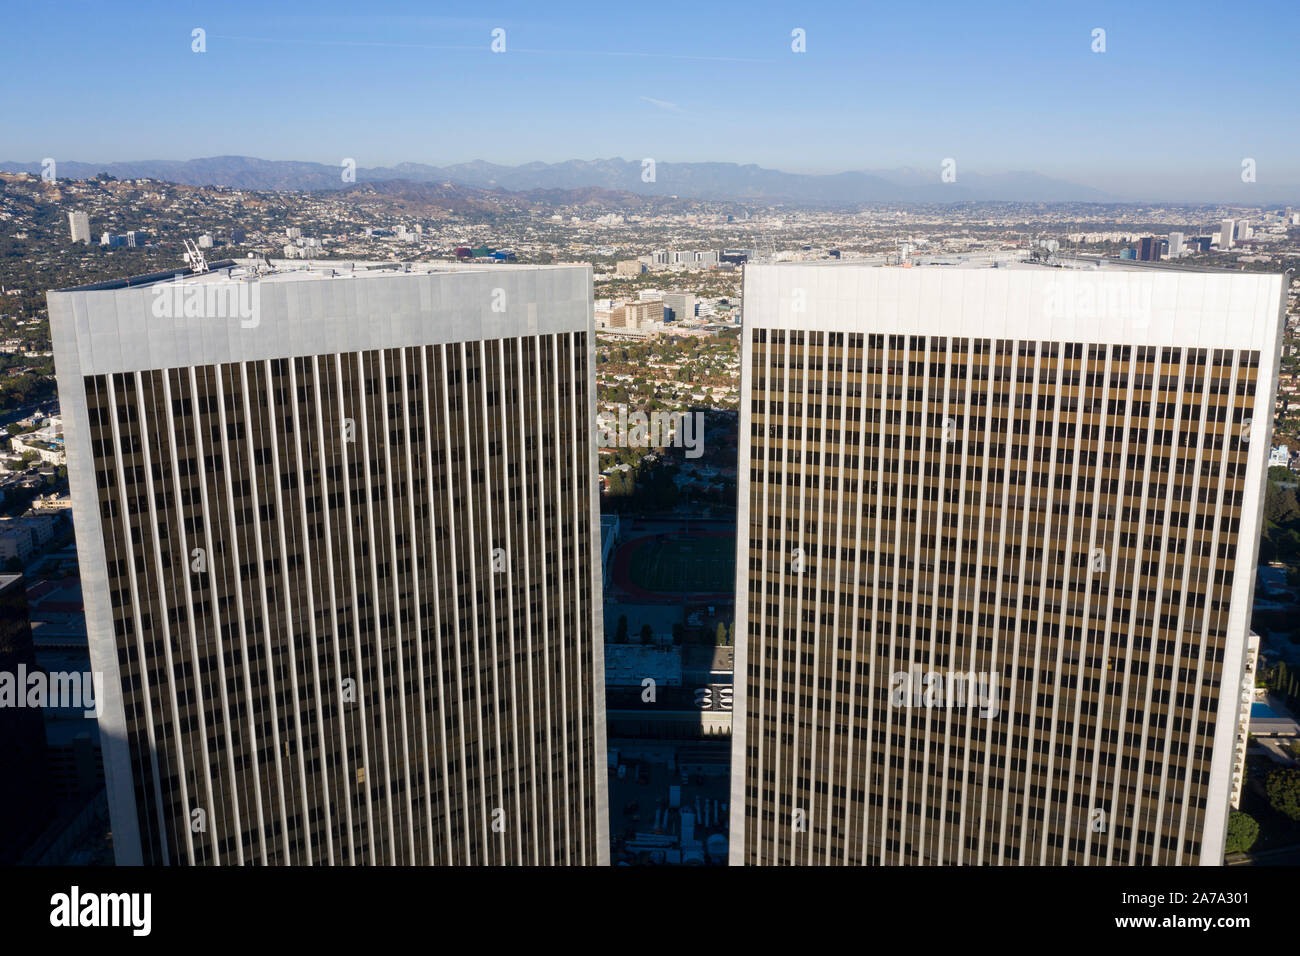 Aerial Views of Century City, California Stock Photo